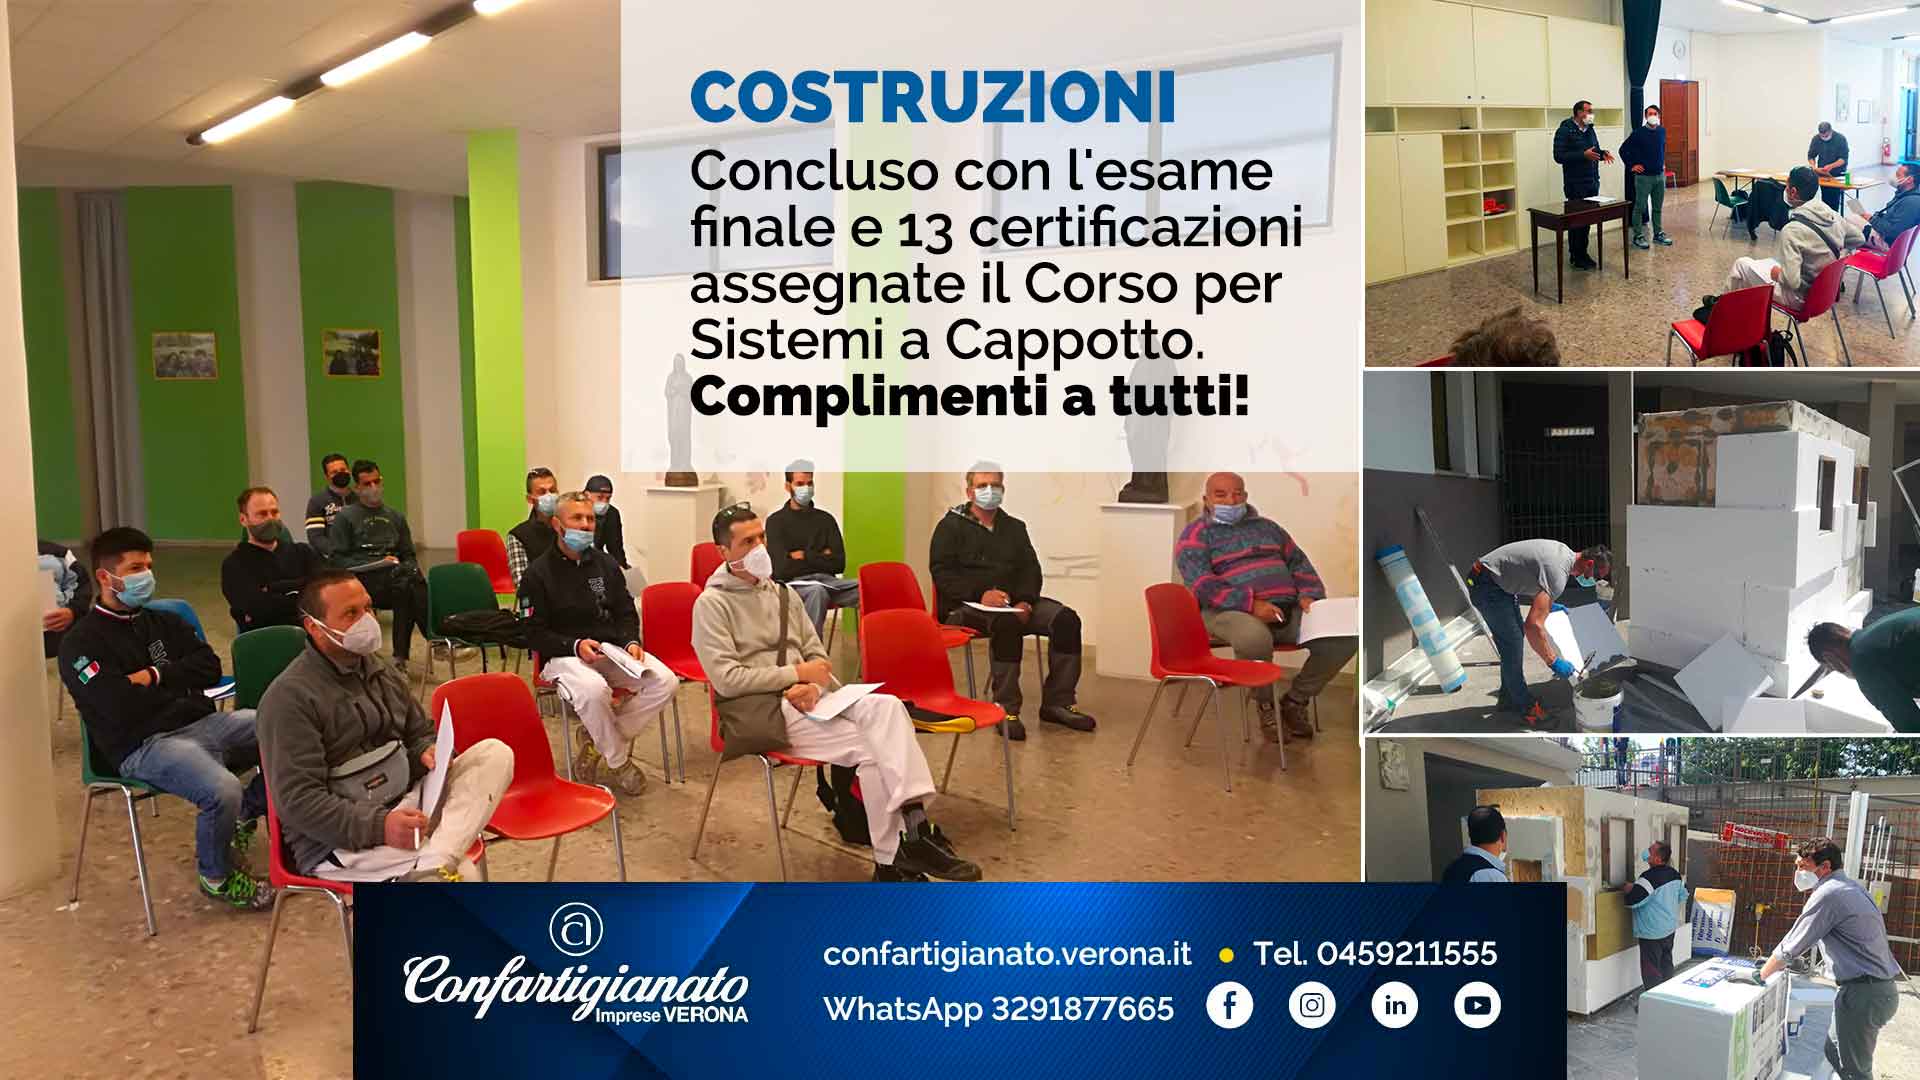 COSTRUZIONI – Concluso con l'esame finale e 13 certificazioni assegnate il Corso per Sistemi a Cappotto. Complimenti a tutti!